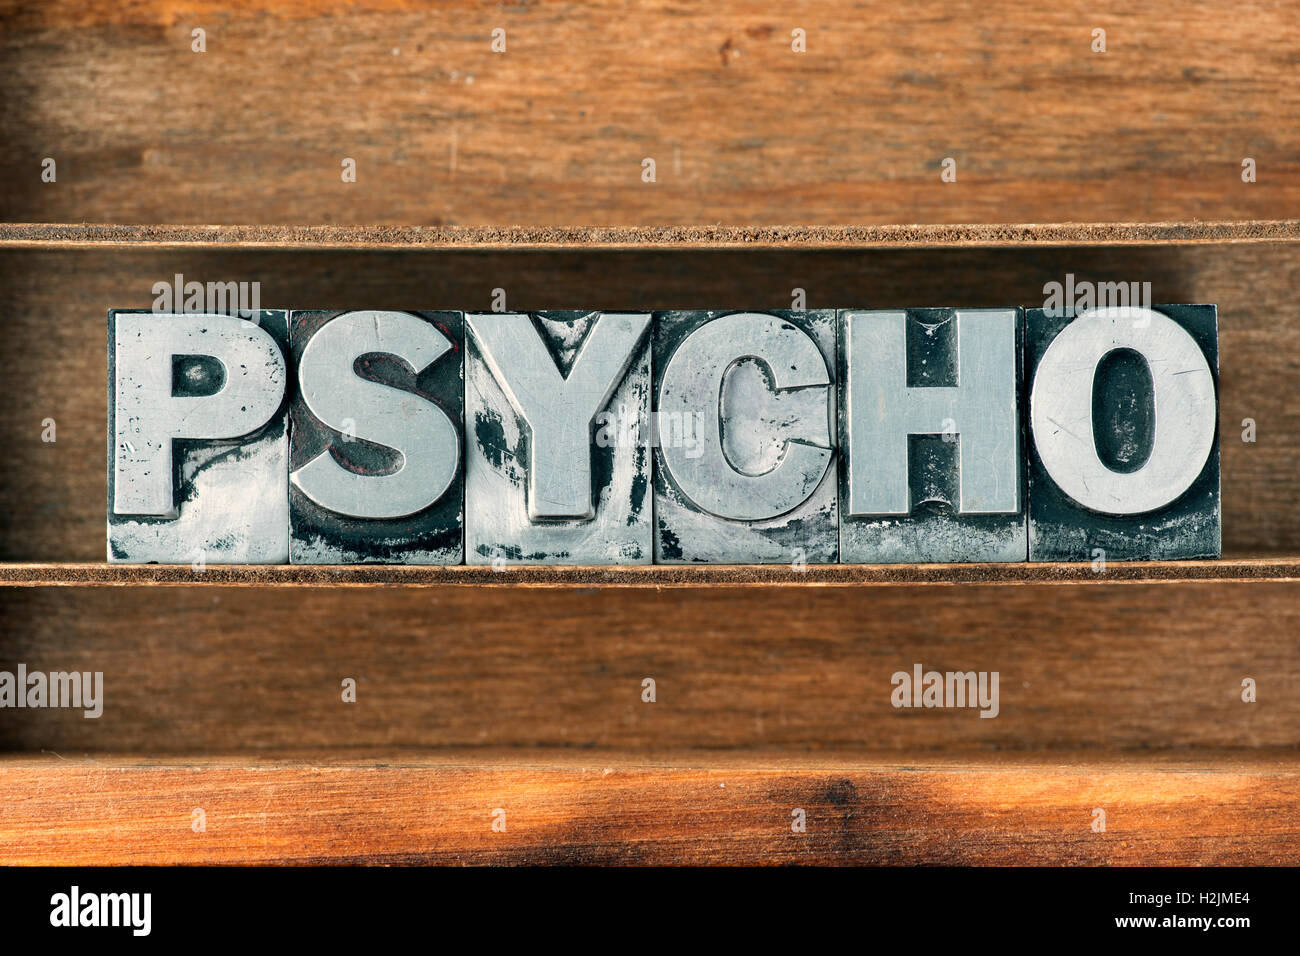 Mot psycho faits de type typographique métallique sur plateau en bois Banque D'Images